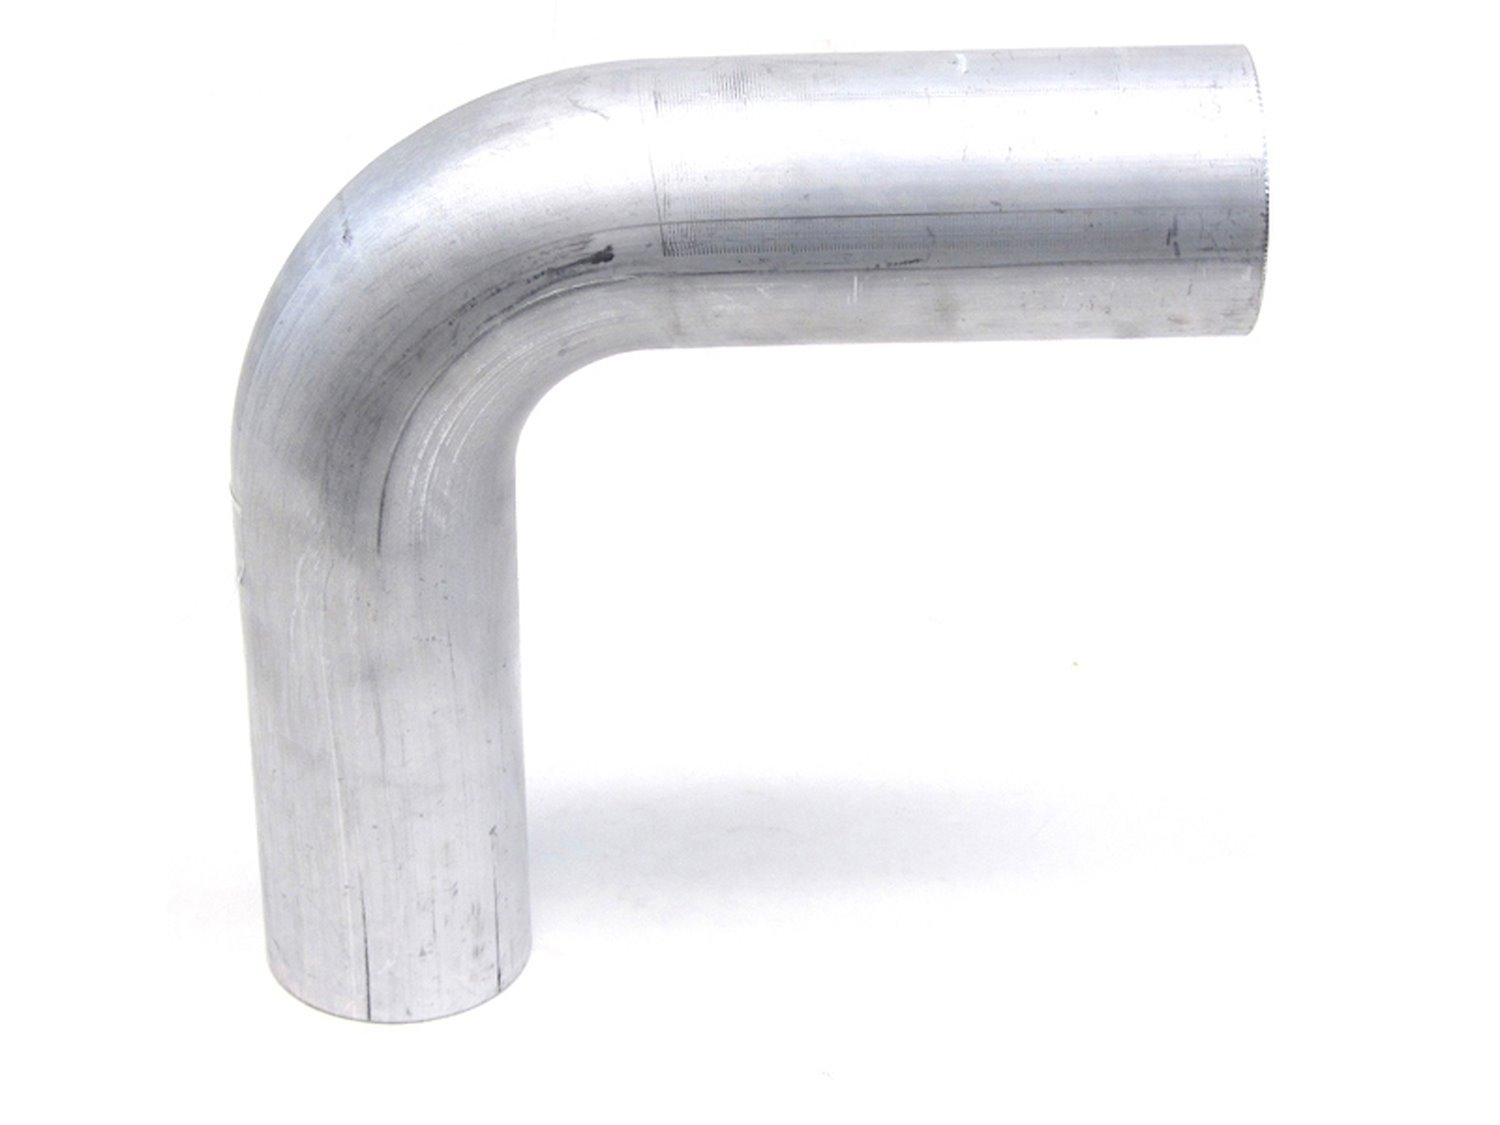 AT90-250-CLR-4 Aluminum Elbow Tube, 6061 Aluminum, 90-Degree Bend Elbow Tubing, 2-1/2 in. OD, Large Radius, 4 in. CLR